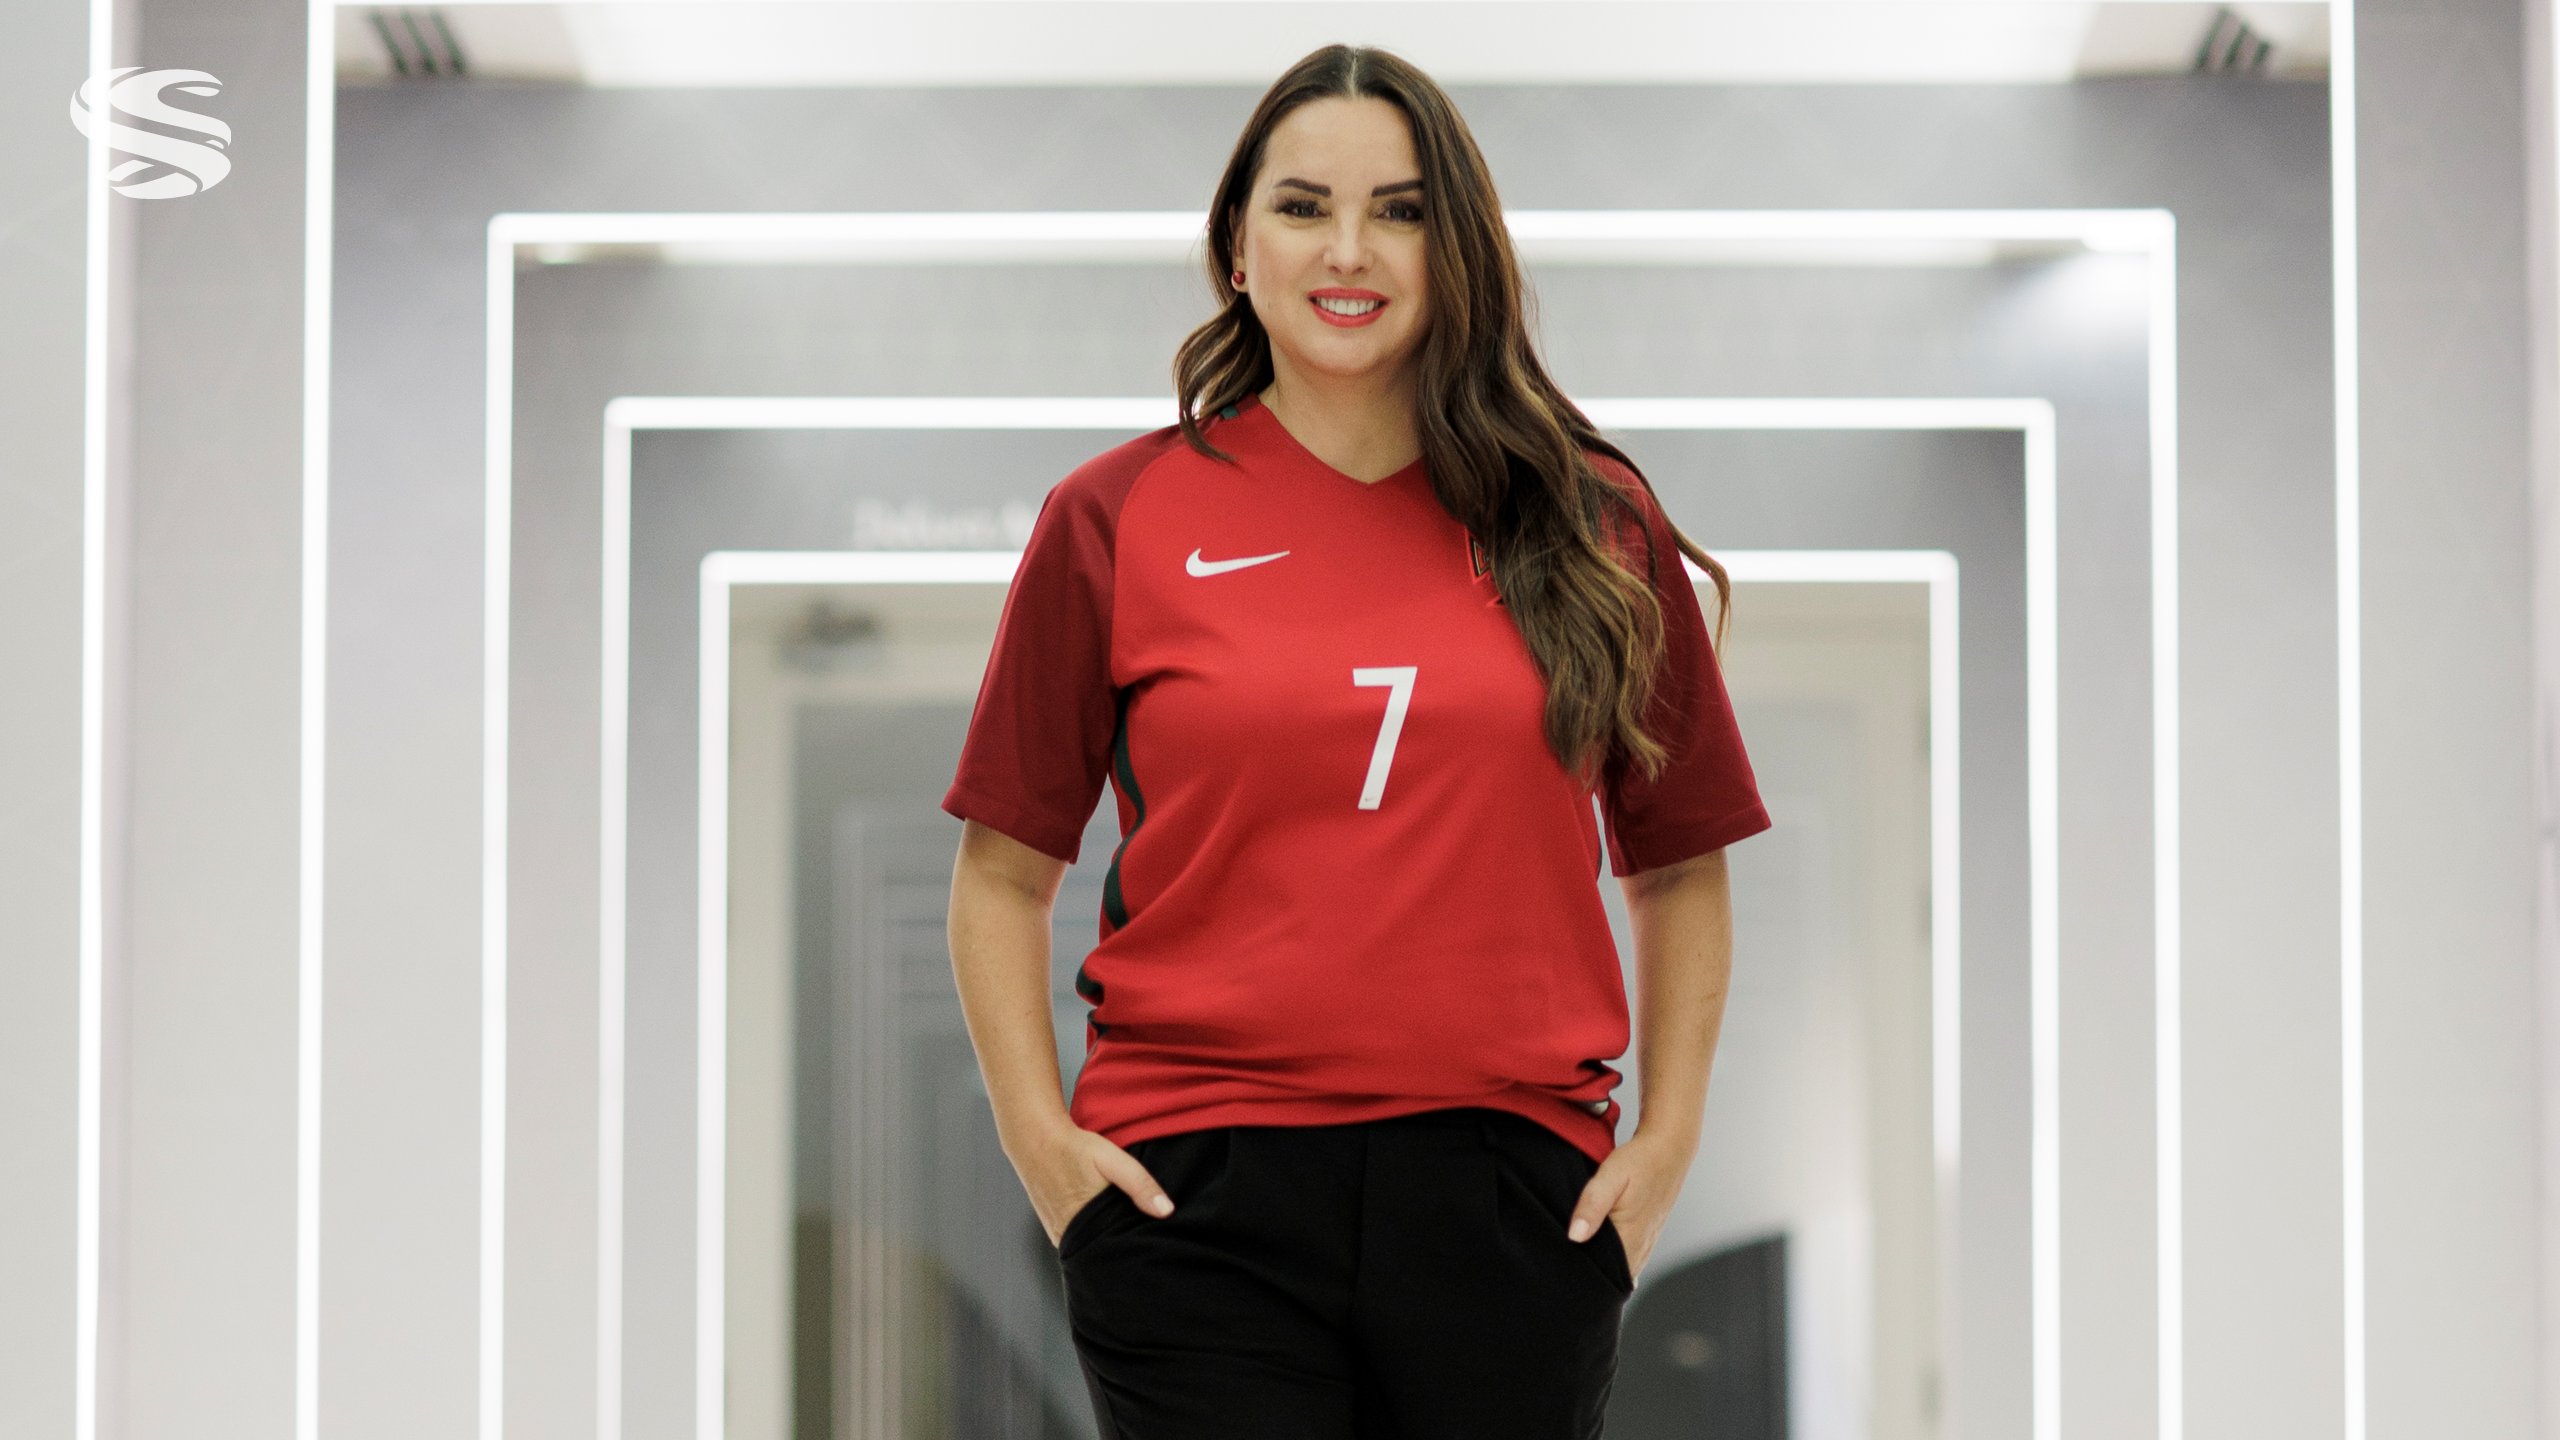 المشجعة البرتغالية، إليزابيت ريس، التي تعيش في العاصمة القطرية "الدوحة" منذ عام 2006